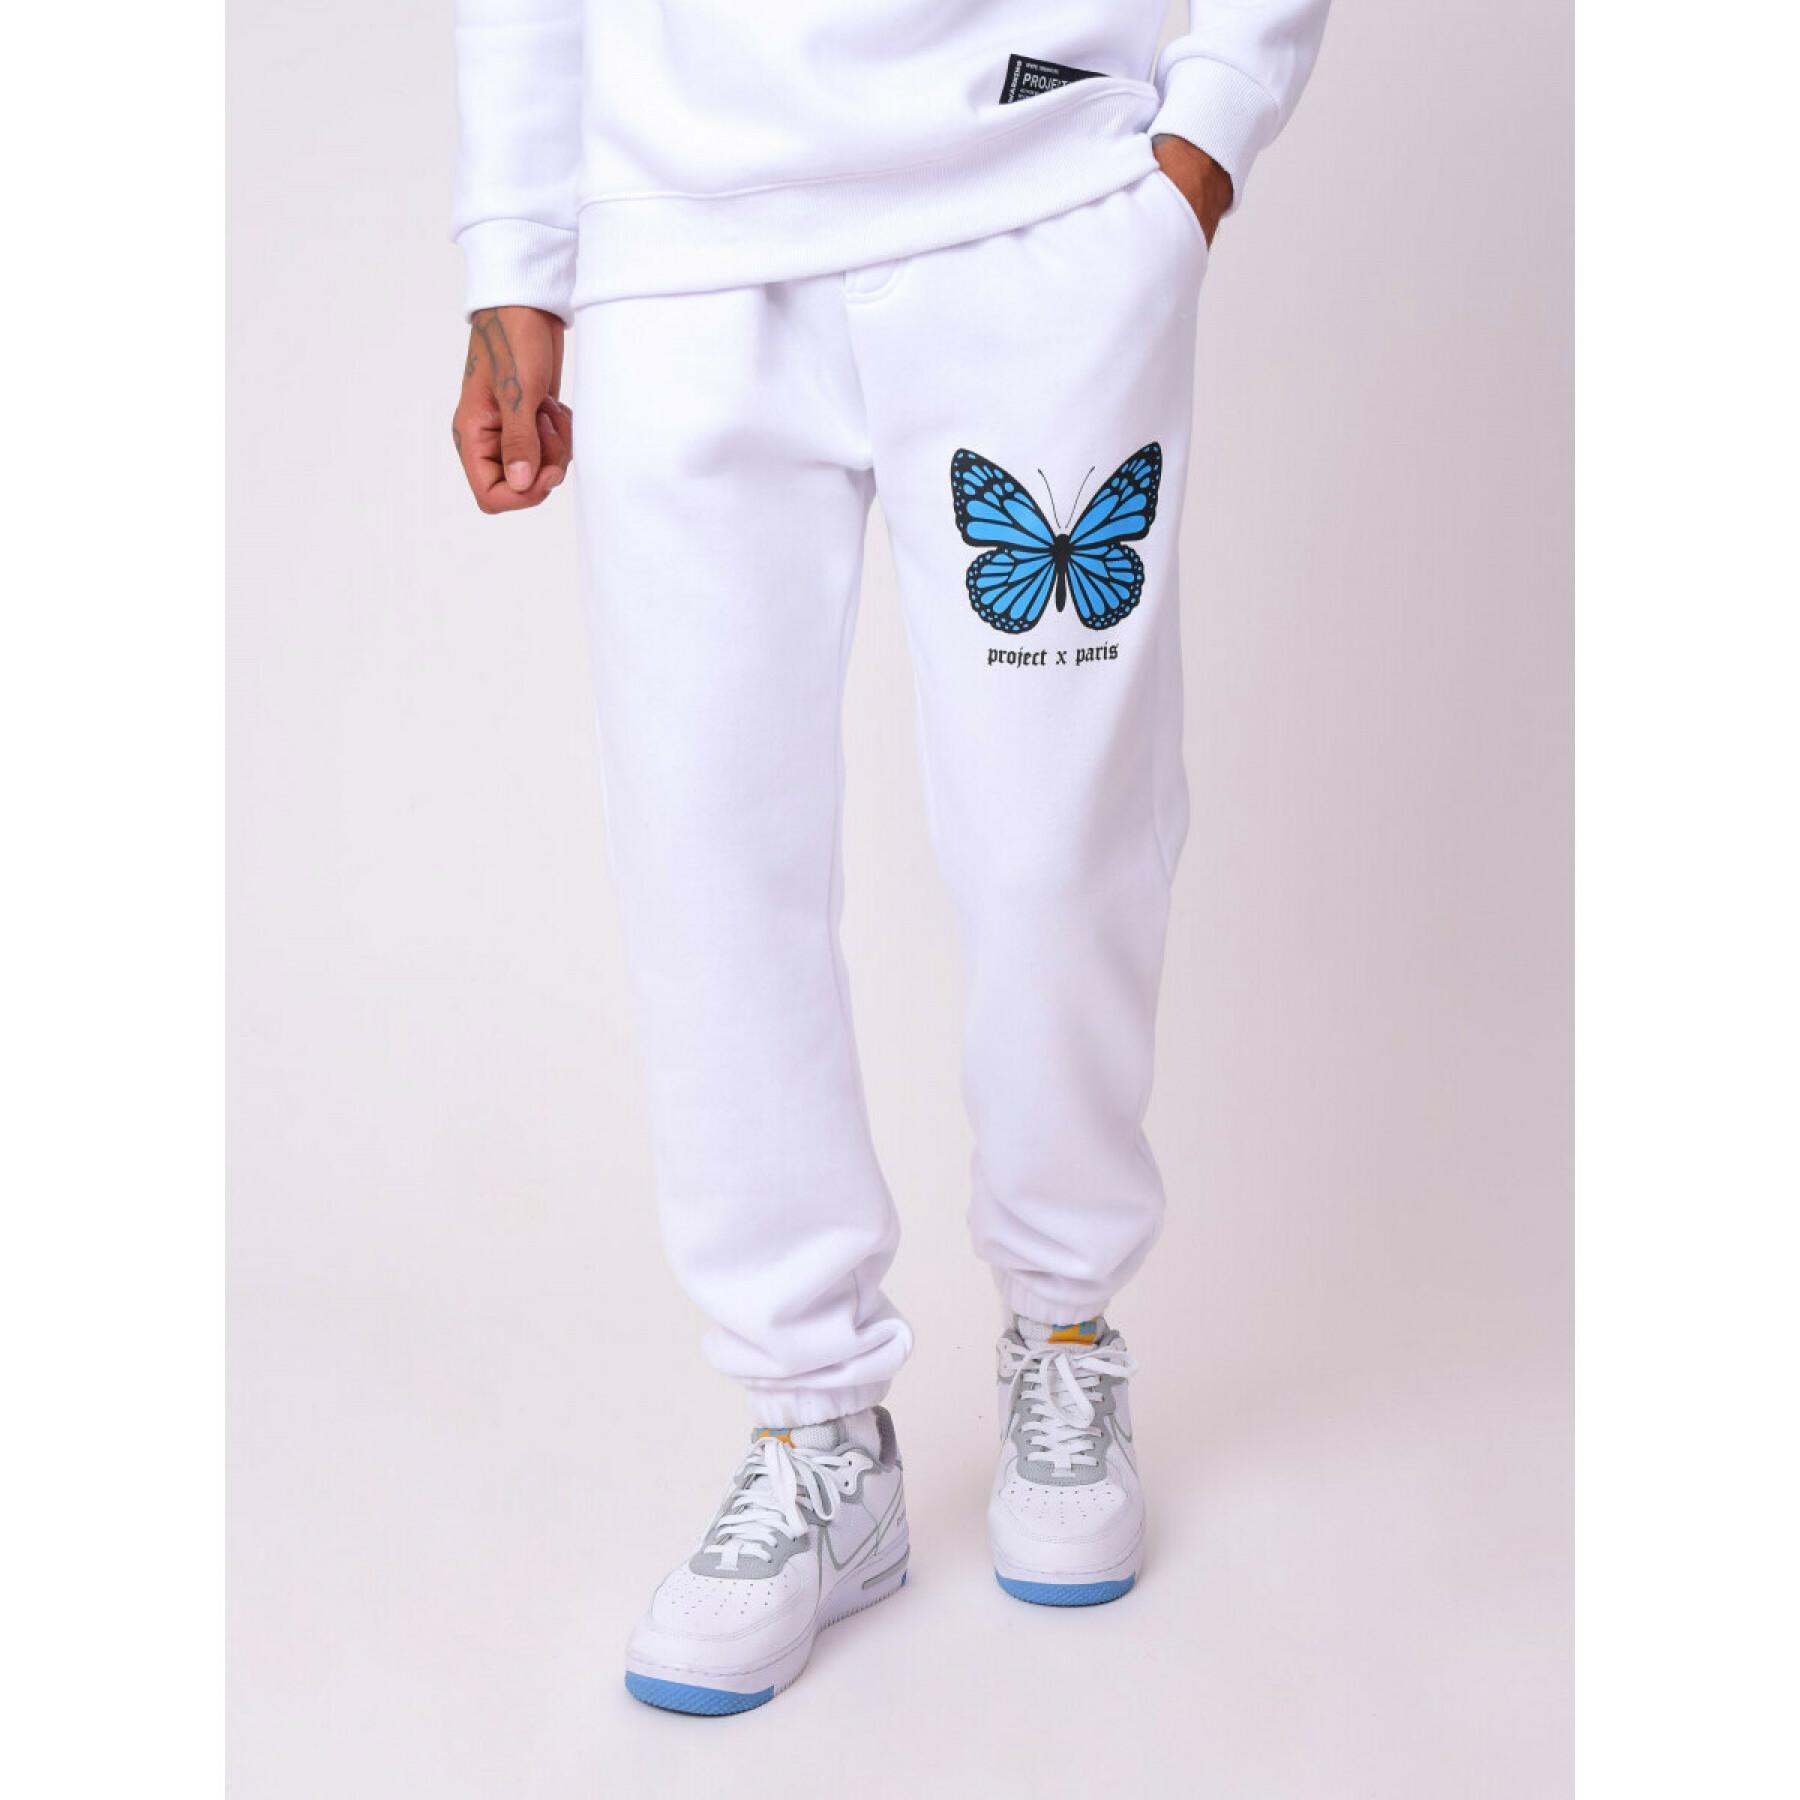 Butterfly print jogging suit Project X Paris